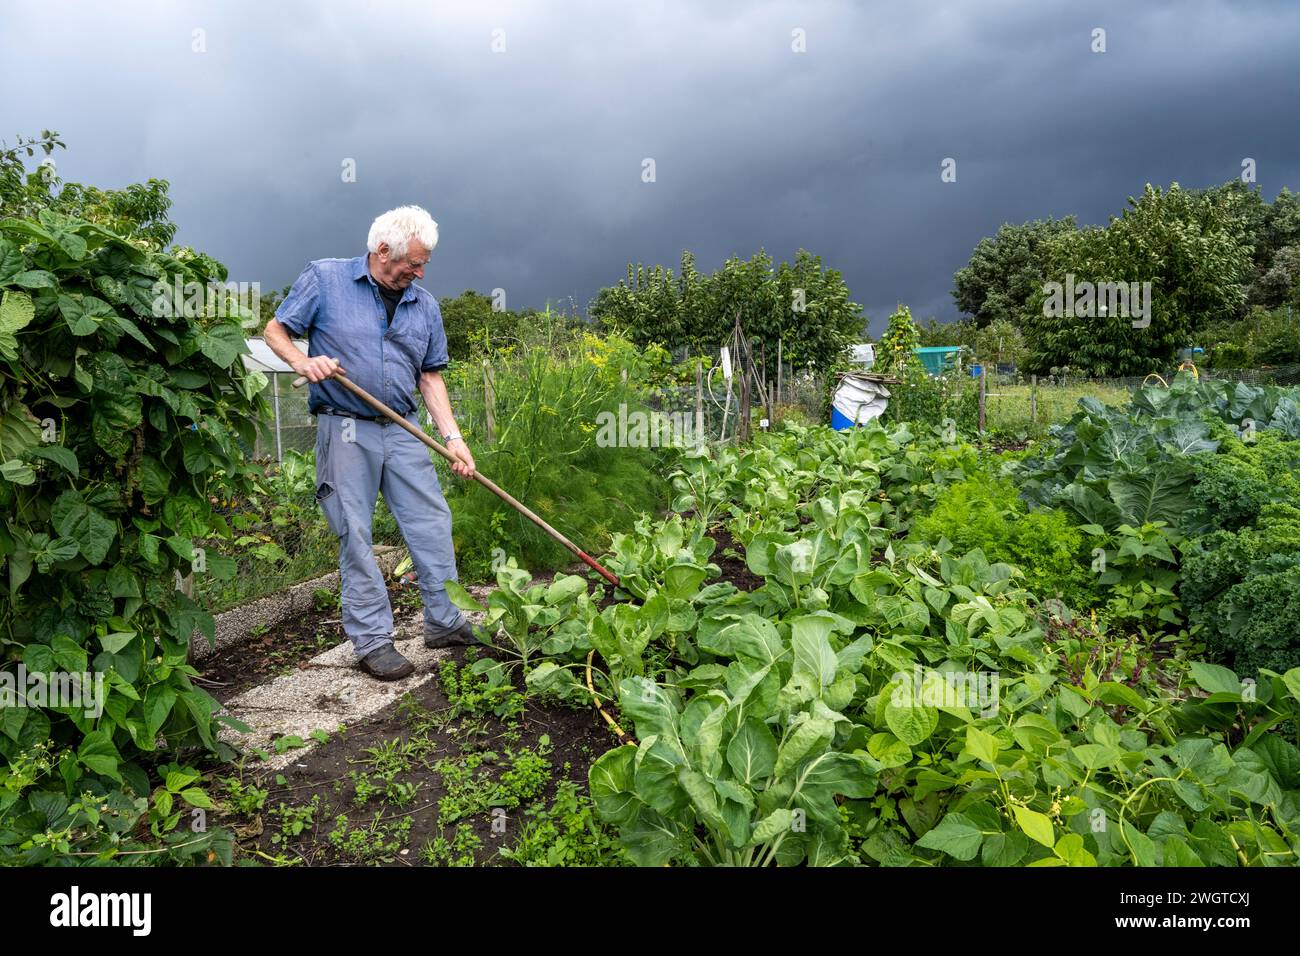 Ein älterer Mann, der in seinem Kleingarten arbeitet und Obst und Gemüse anbaut. Ökologisch gesunde nachhaltige Lebensmittel Stockfoto